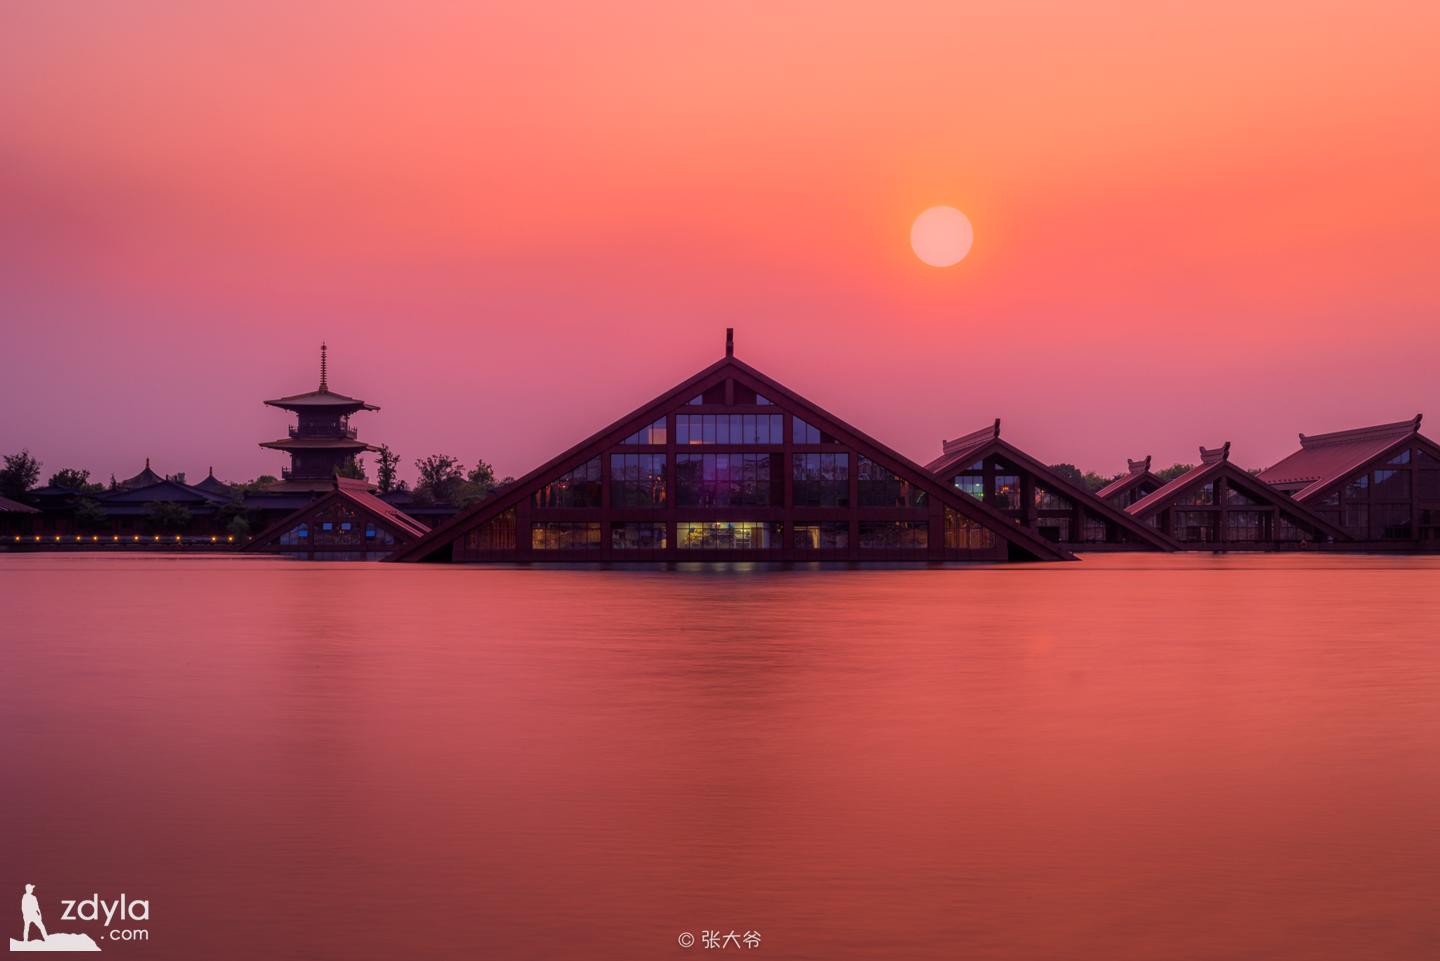 Sunset on Dongwu